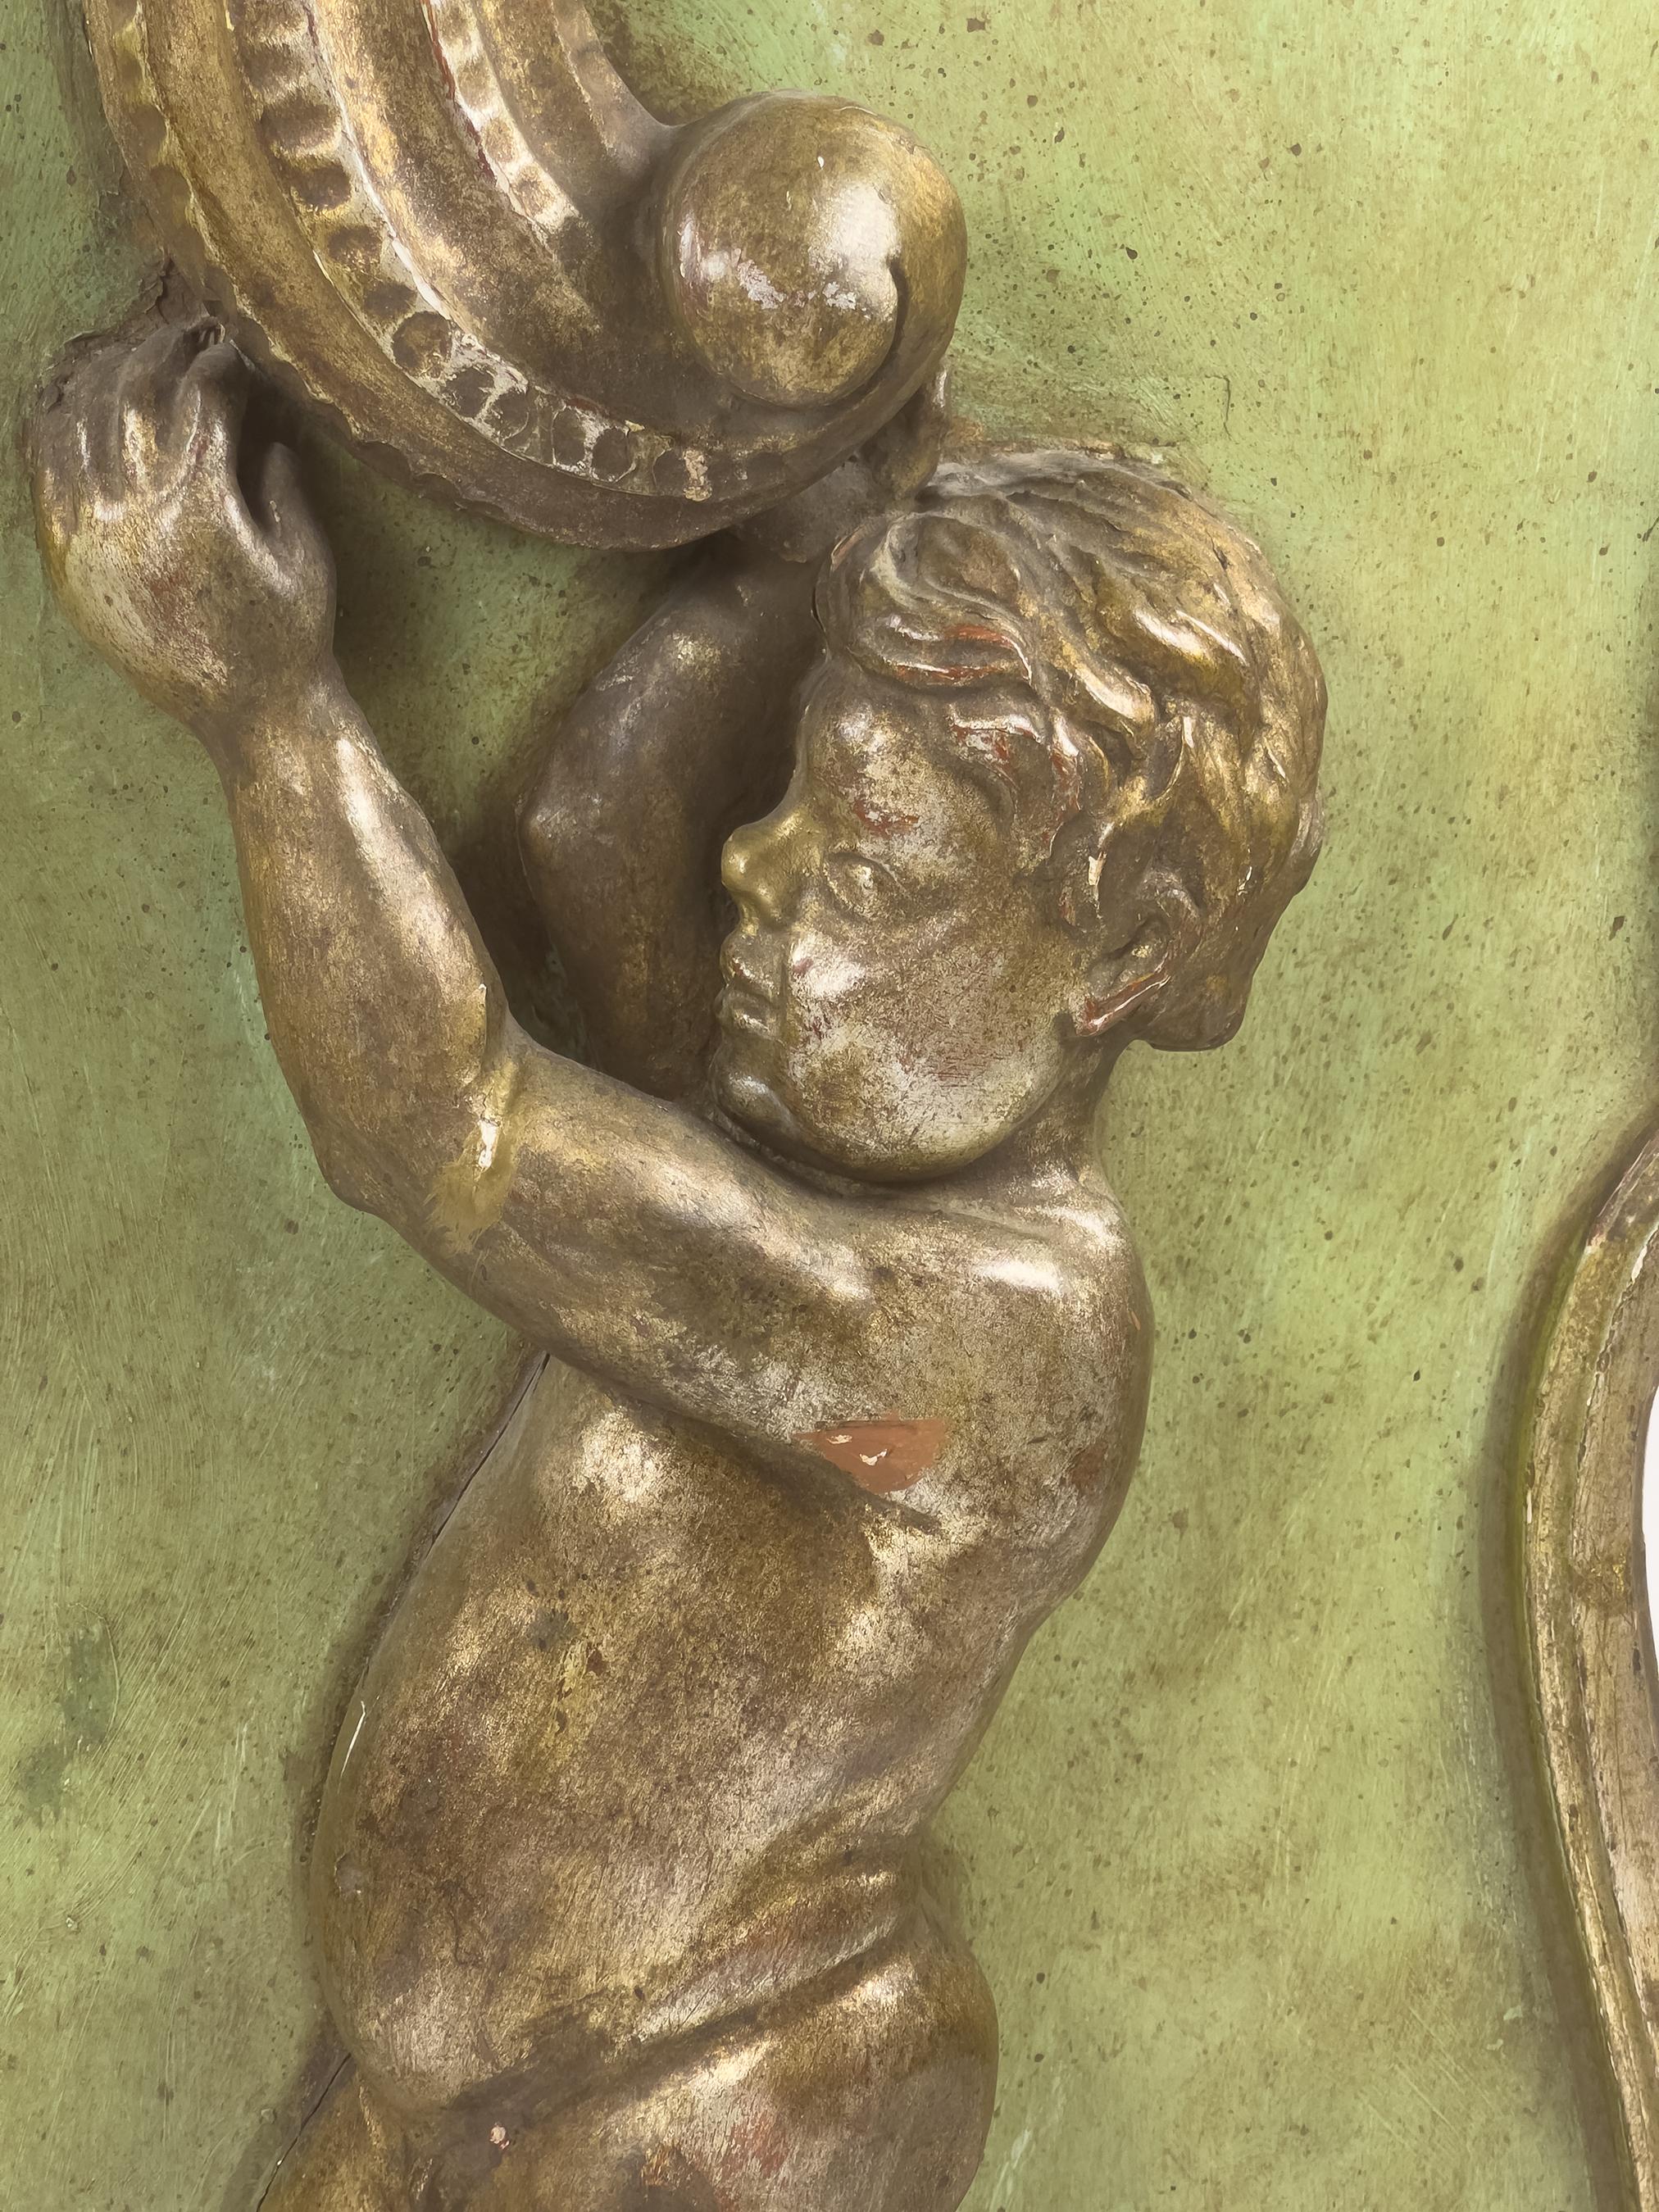 Une élégante étagère murale en bois doré avec un chérubin sculpté tenant une corne d'abondance qui se transforme en étagère. Circa XVII ou XVIIIe siècle d'Italie. La pièce est sculptée à la main et agrémentée d'un puto et d'une corne d'abondance